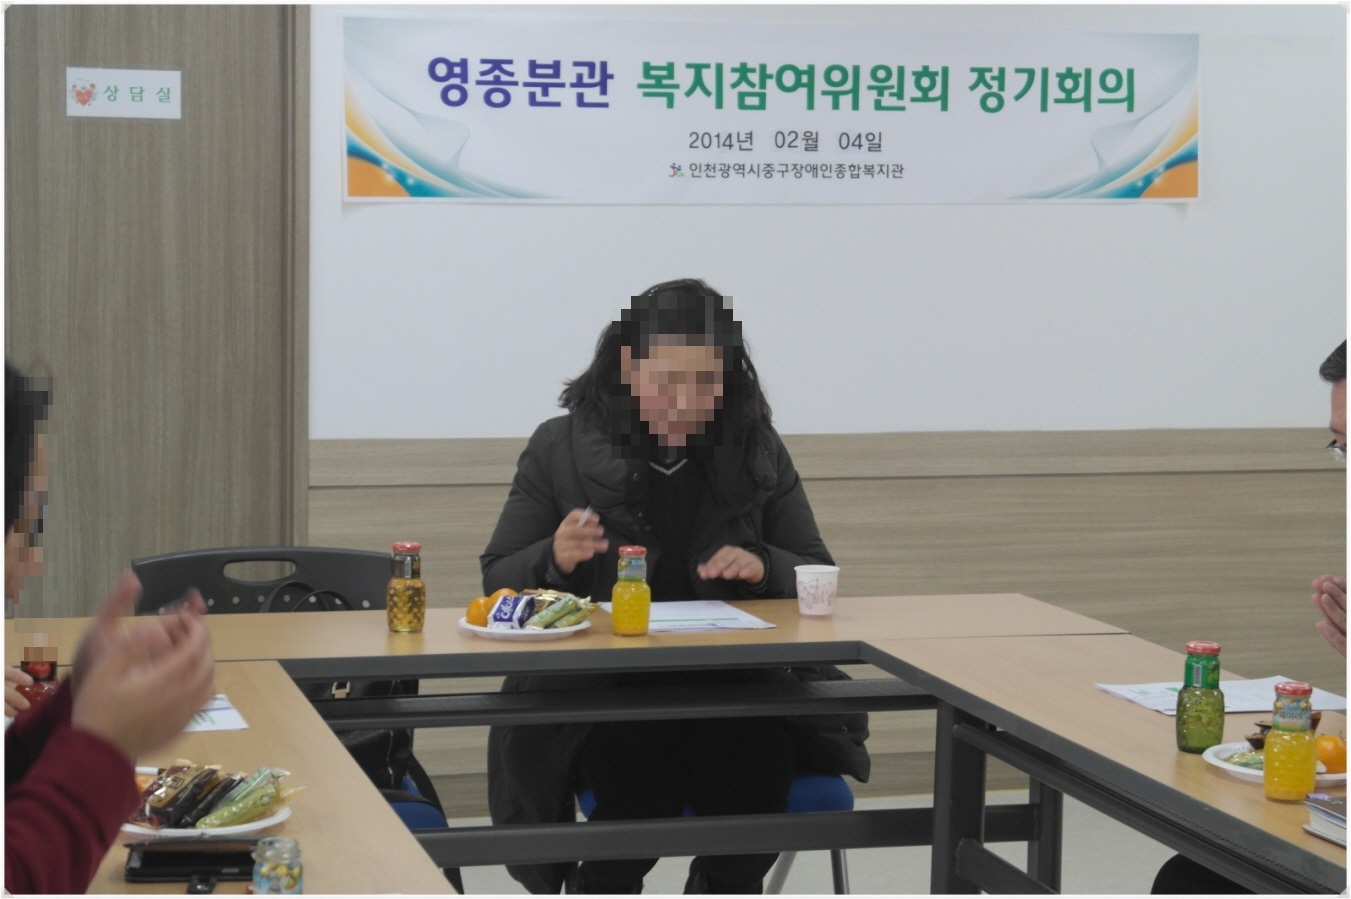 2014.02.05(수) 복지참여위원회 정기회의